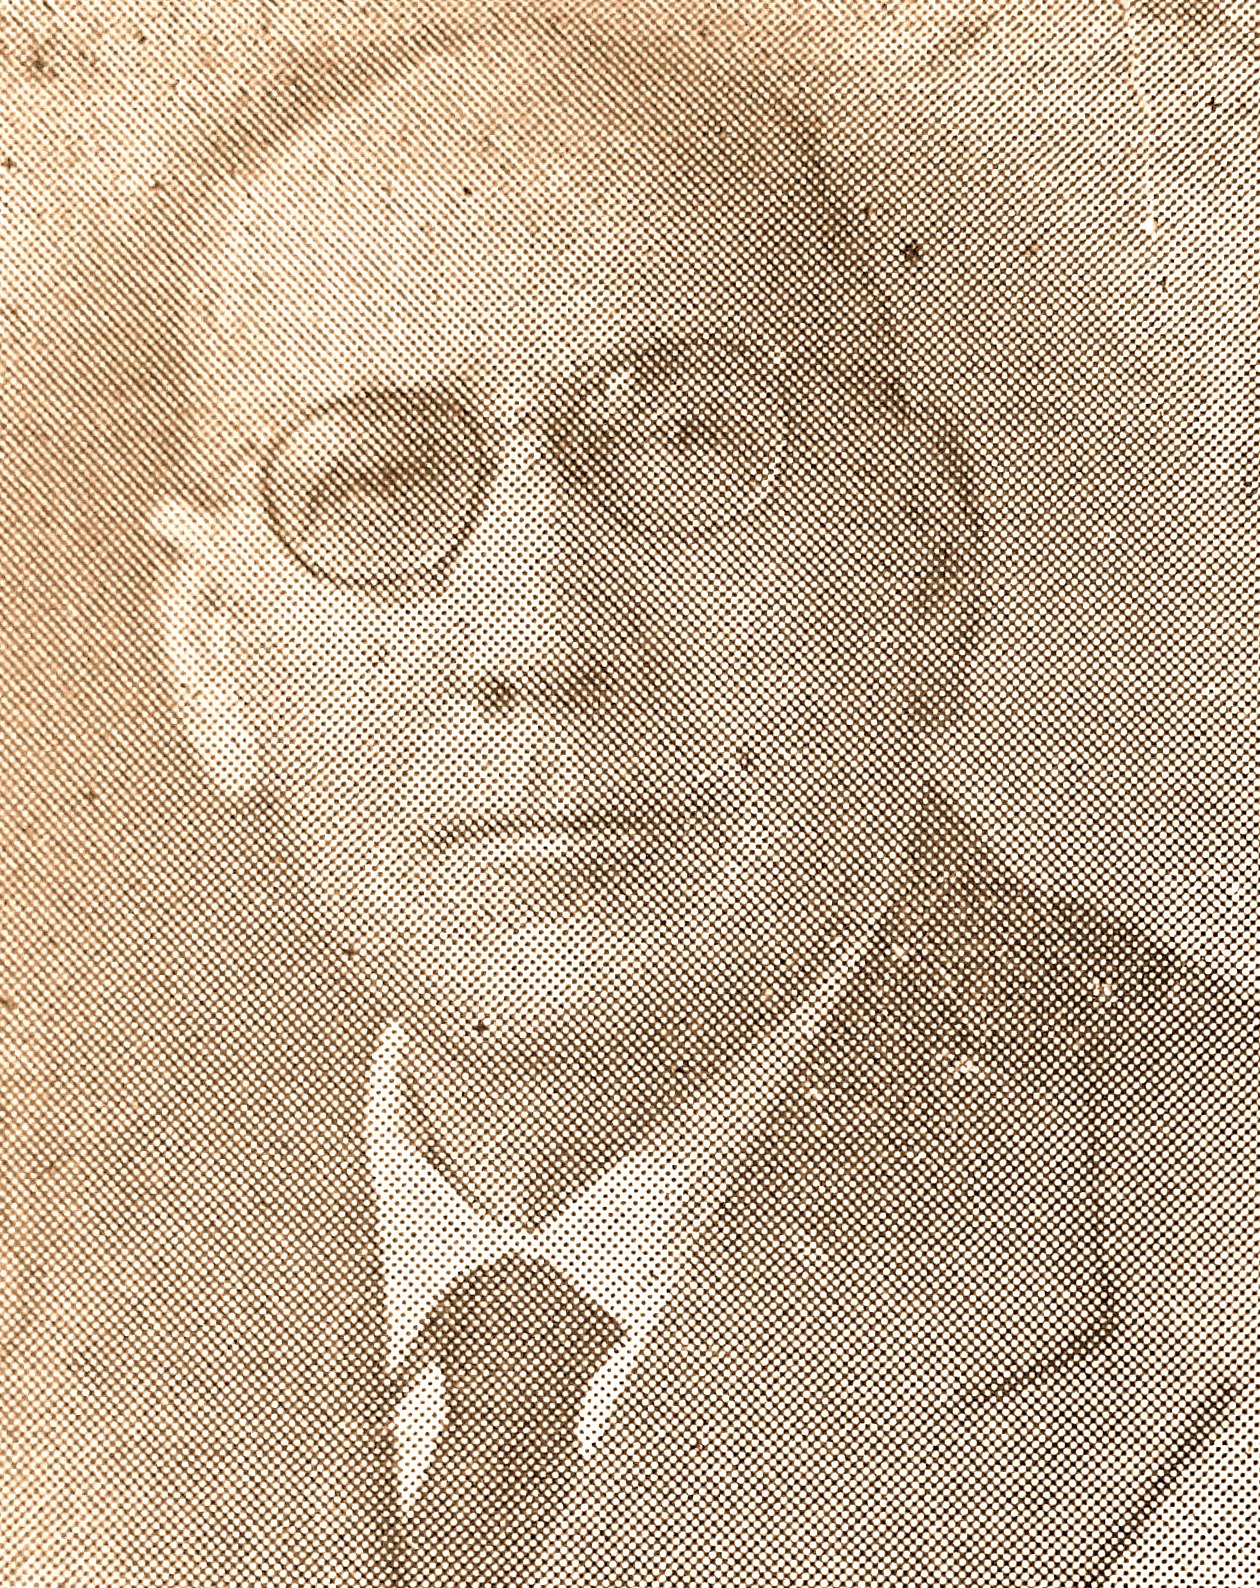 Pasquale Cecchi (archivio PCI)